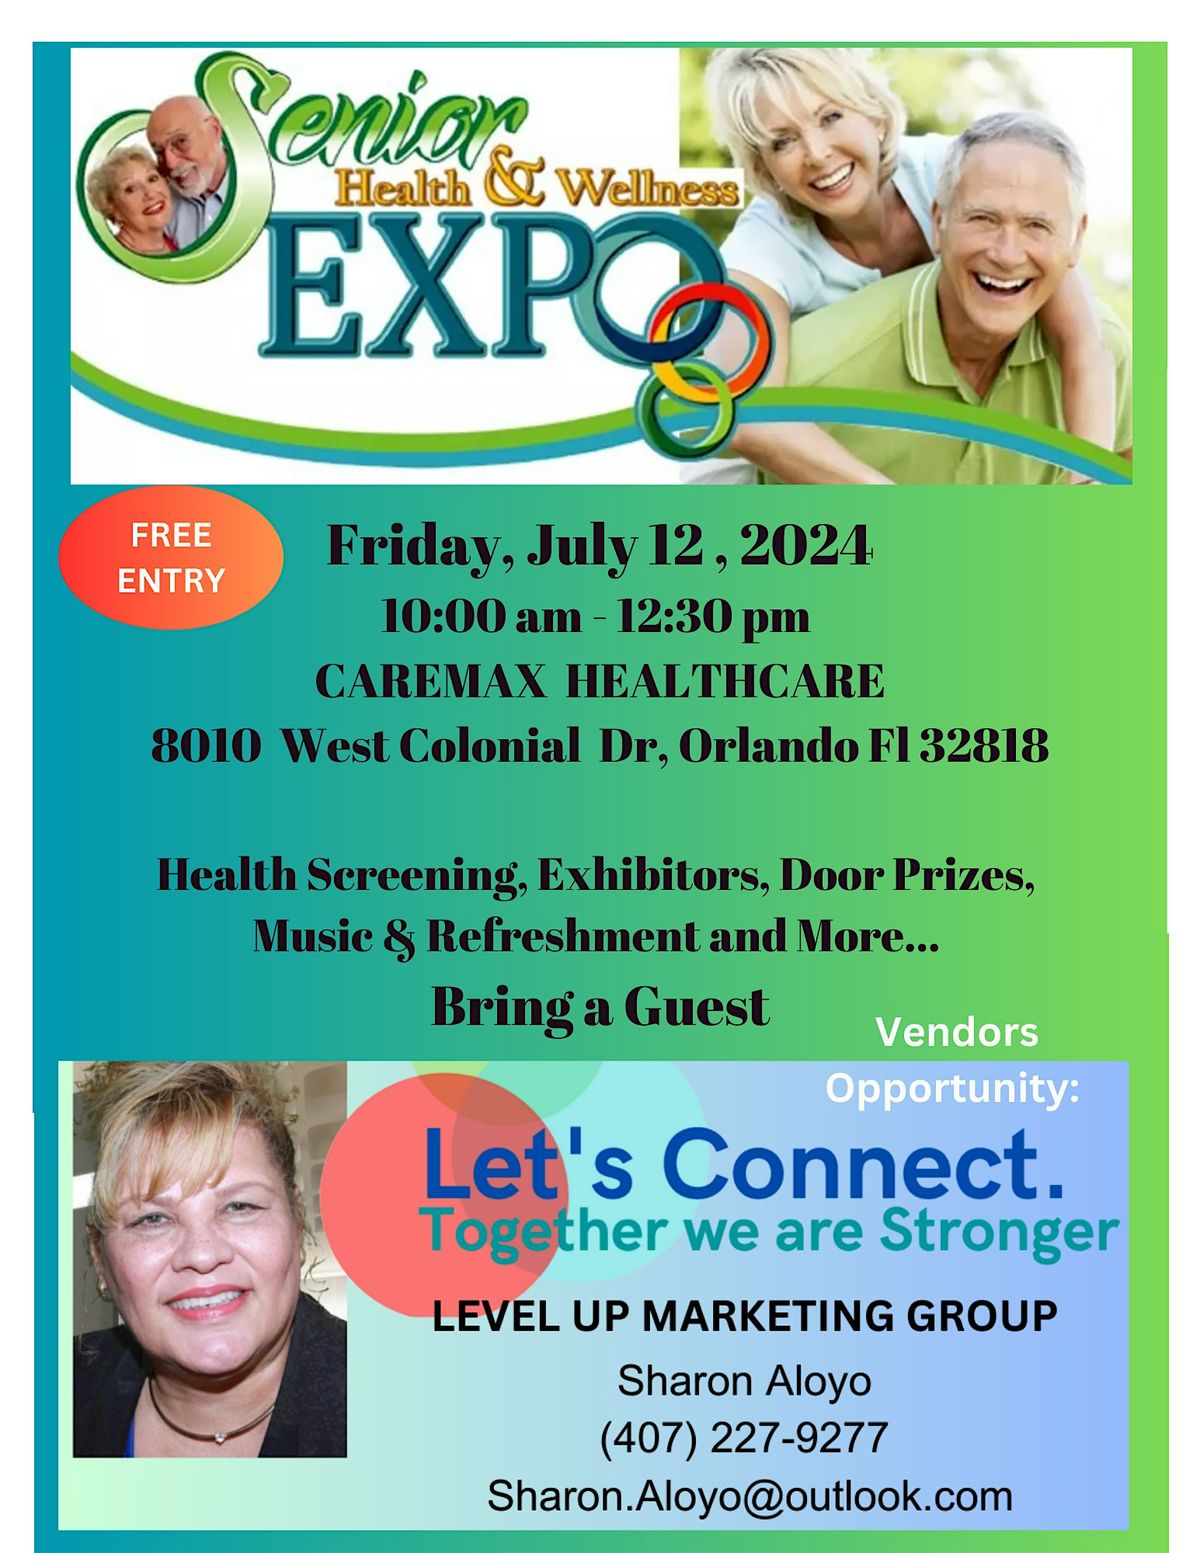 Level UP Health & Wellness Senior Expo West Orlando - Vendor Registration